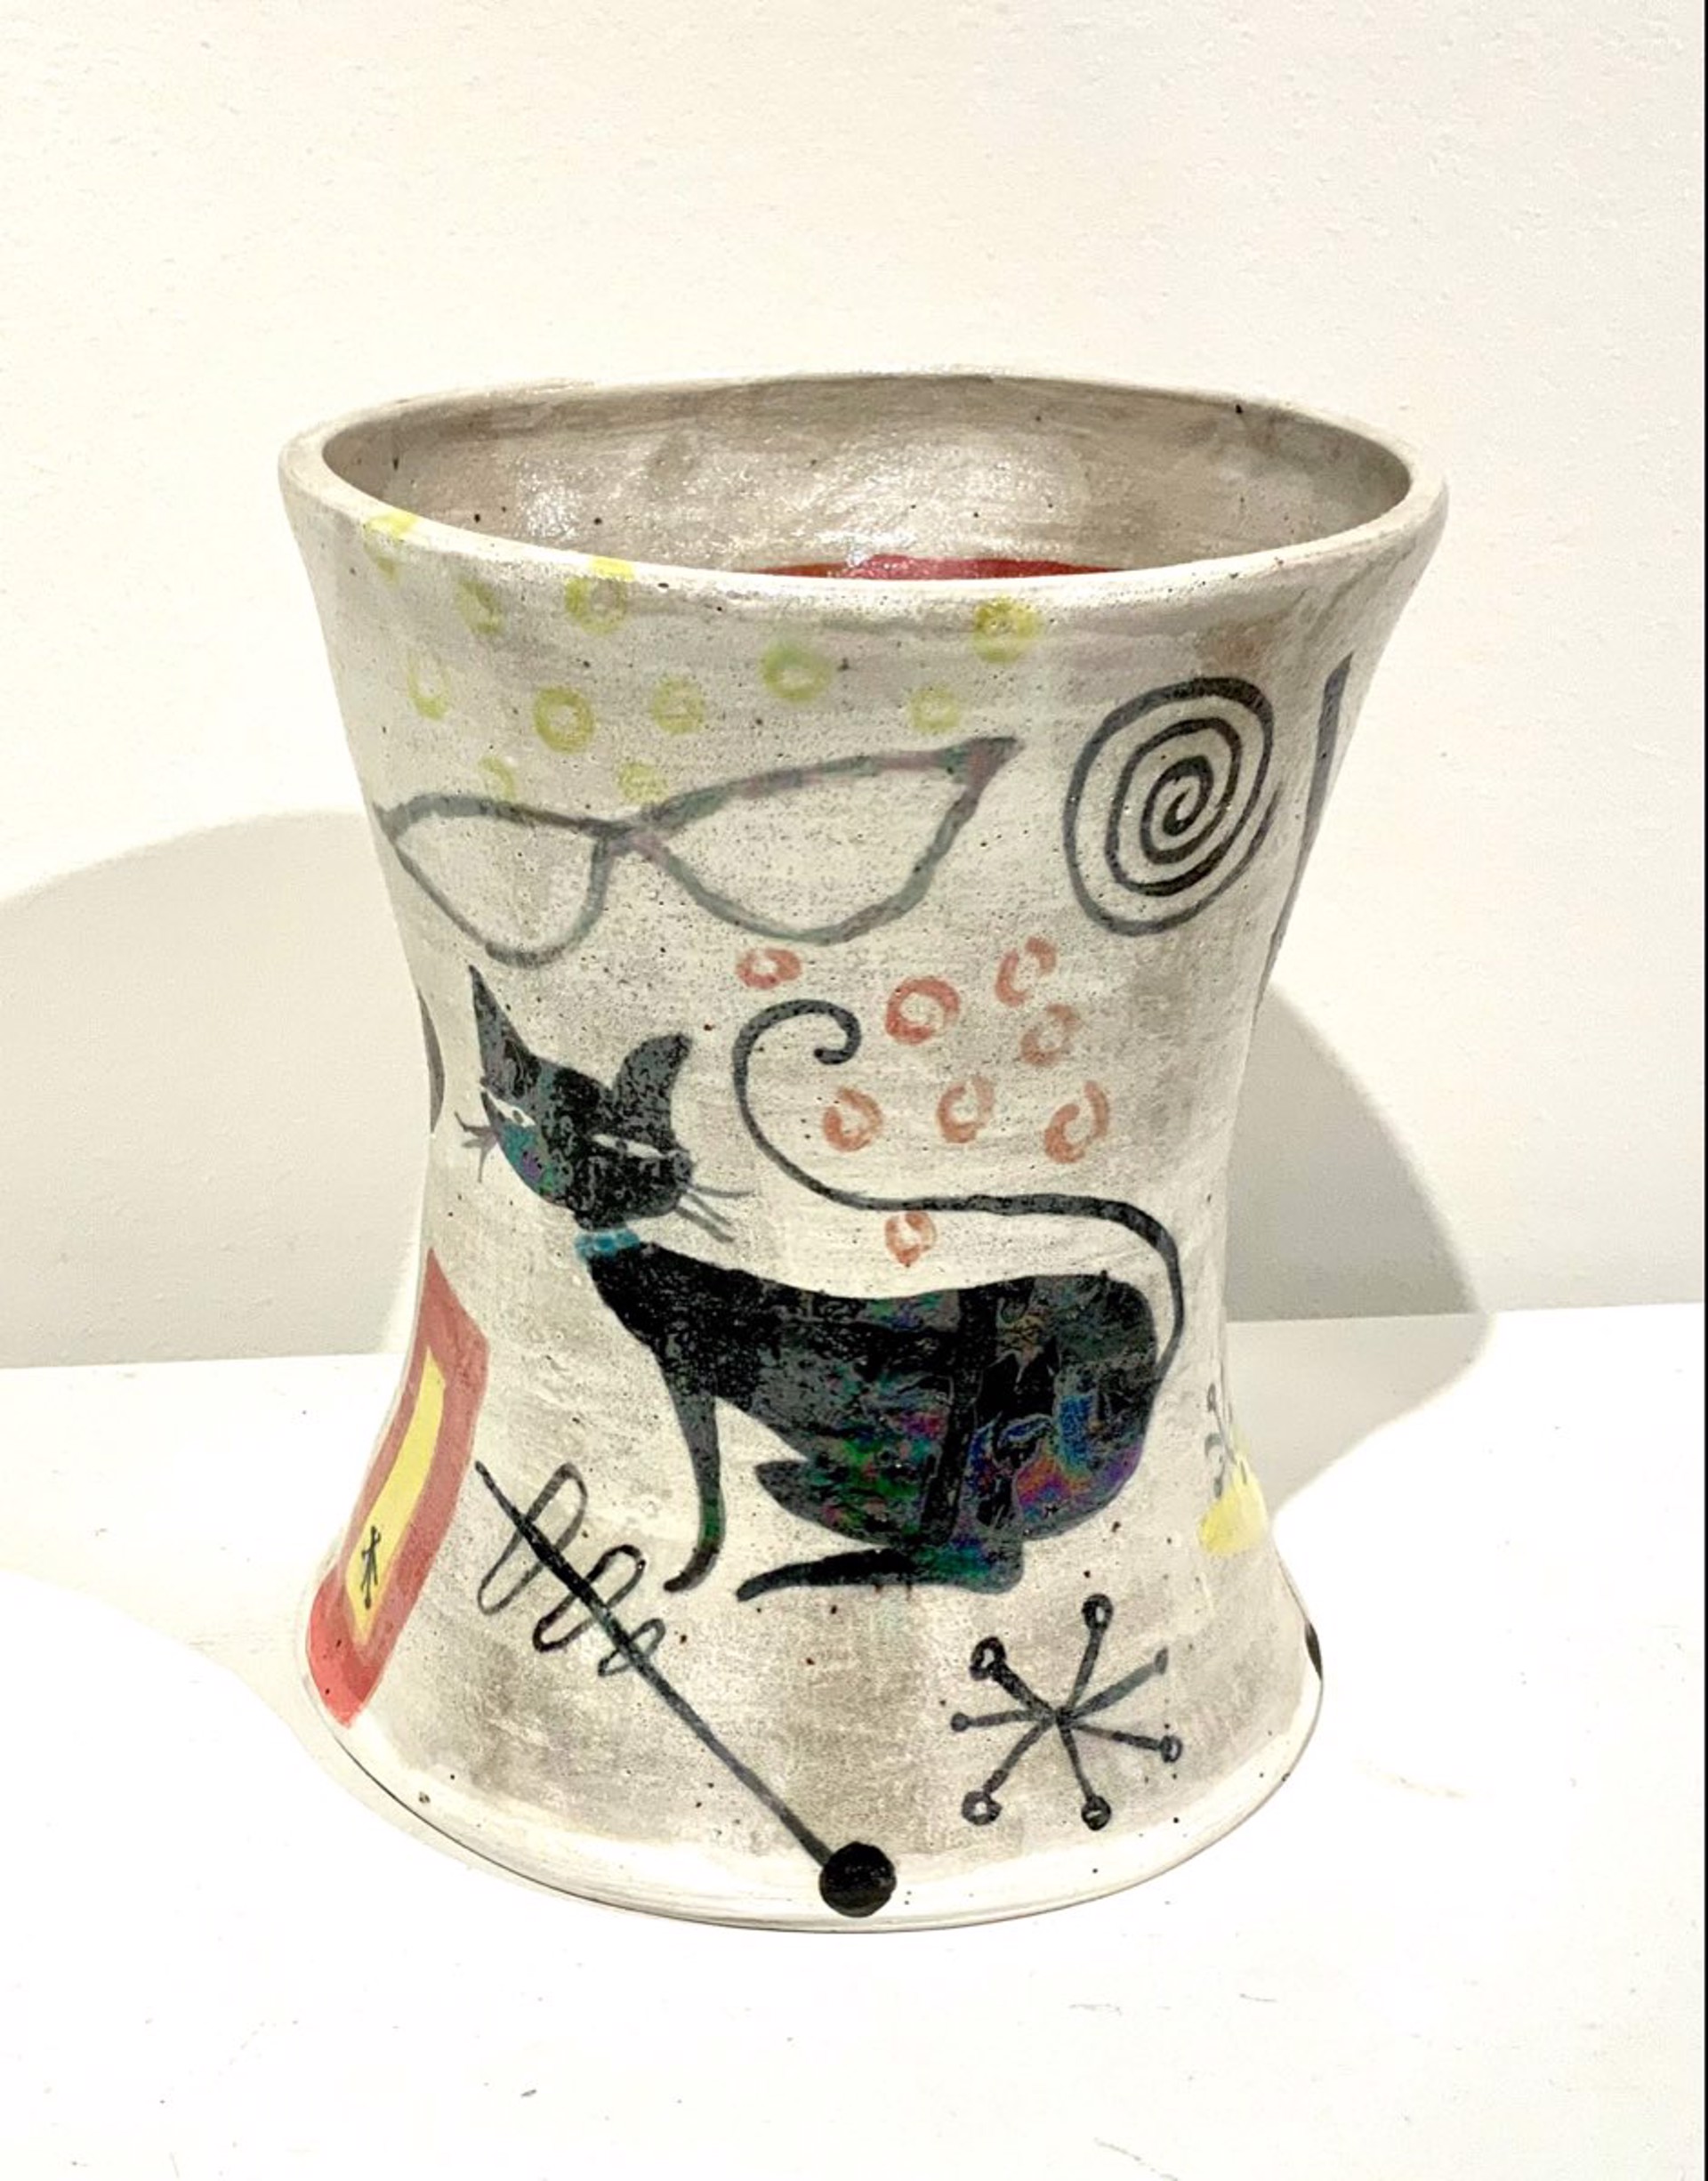 Cat Celebration Vase by Estell Osten